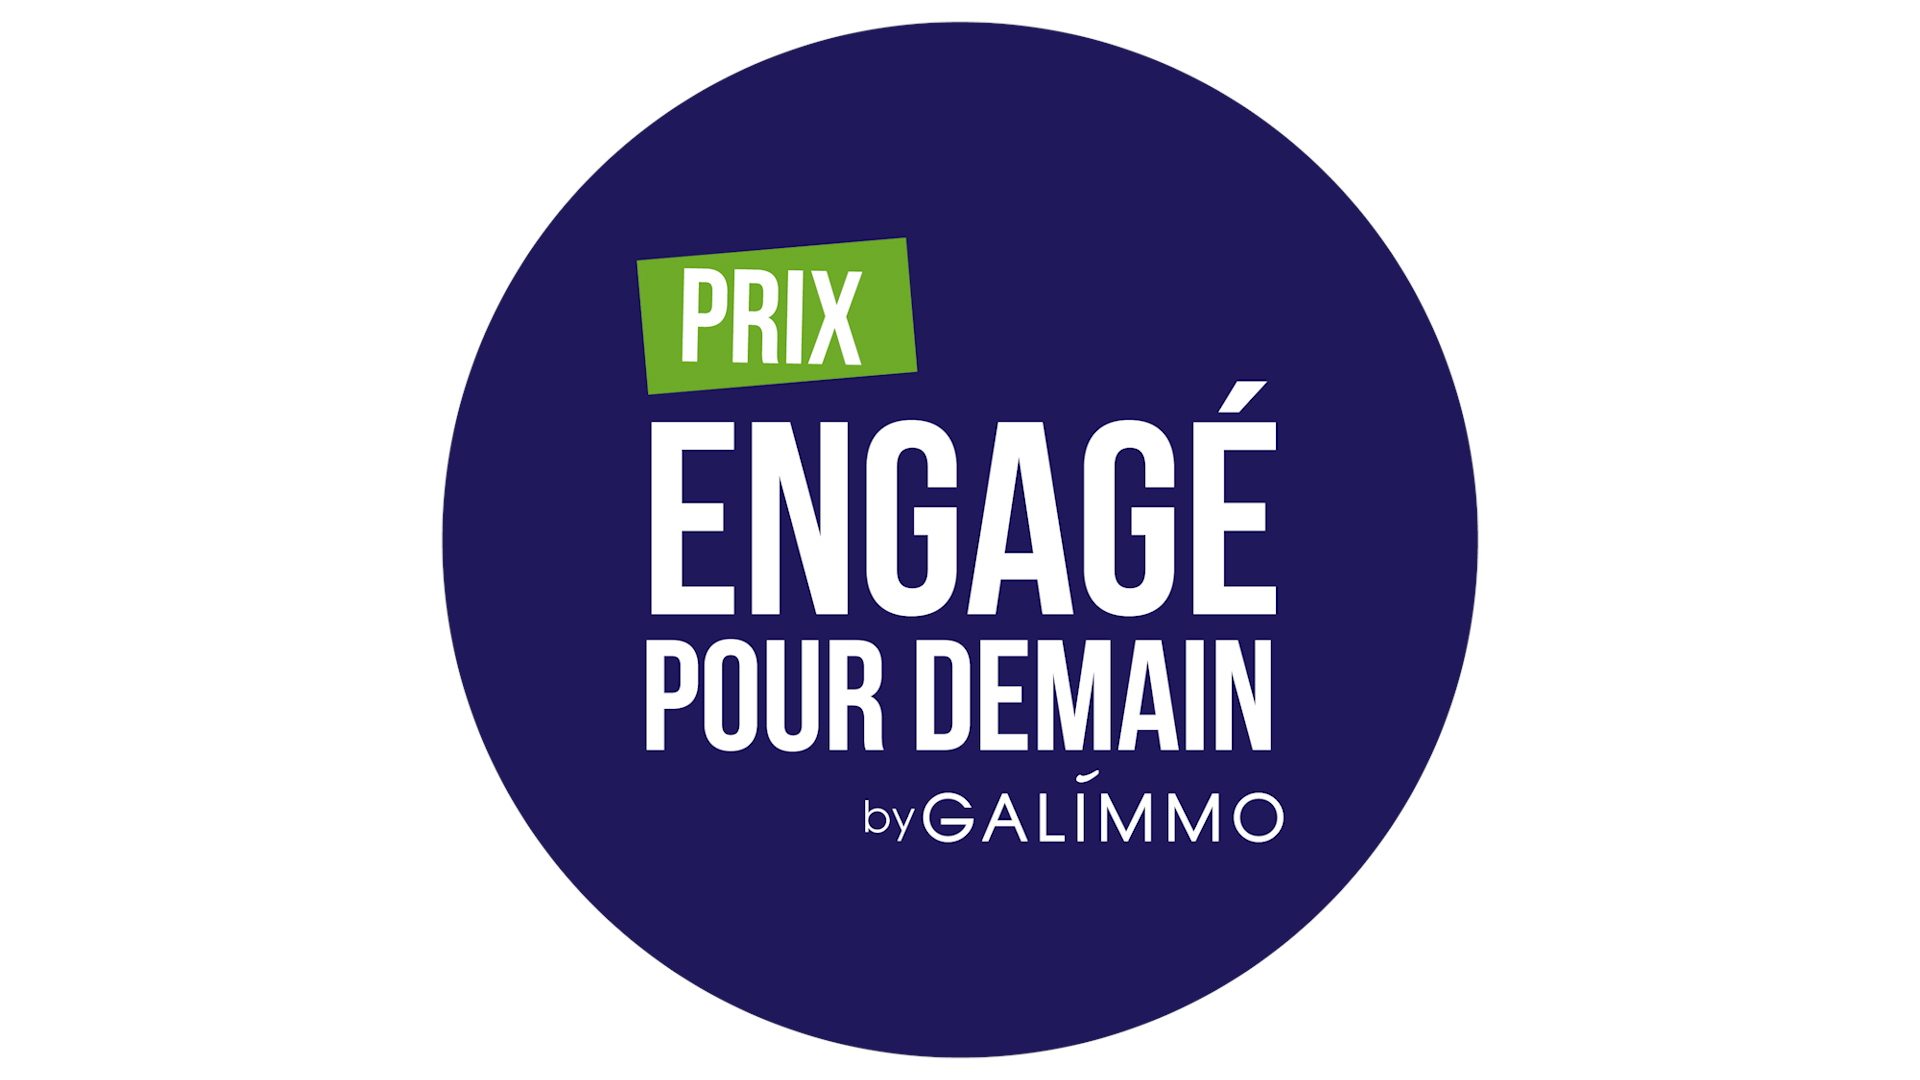 Prix engagé pour demain by Galimmo